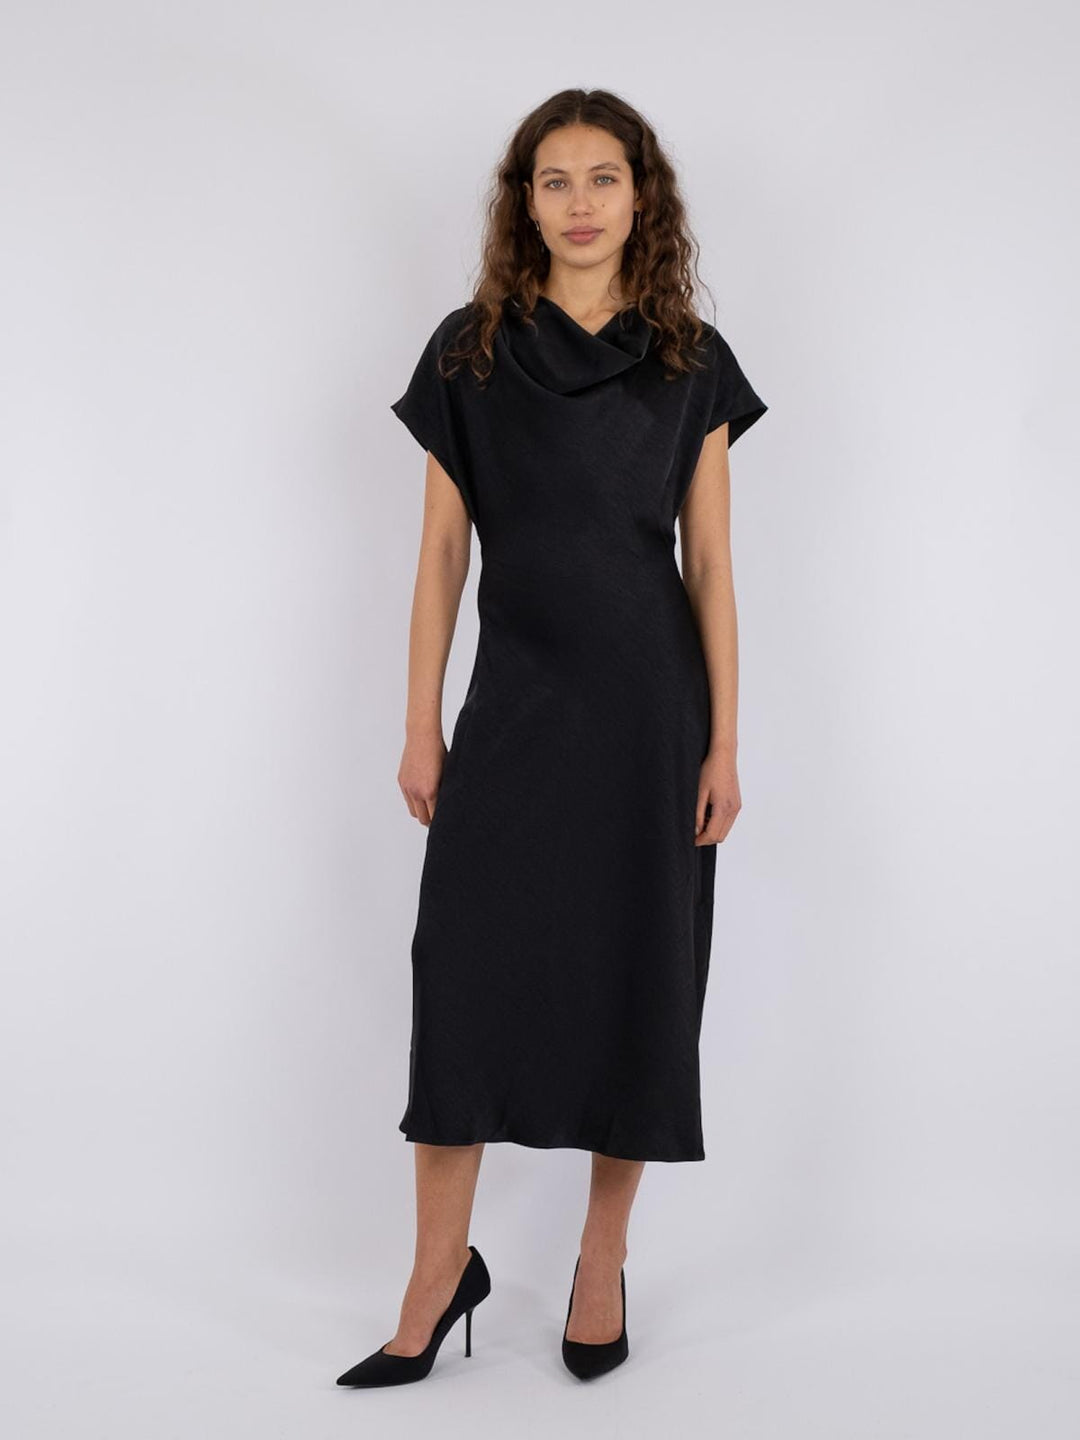 Neo Noir - Lucinda Heavy Sateen Dress - Black Kjoler 